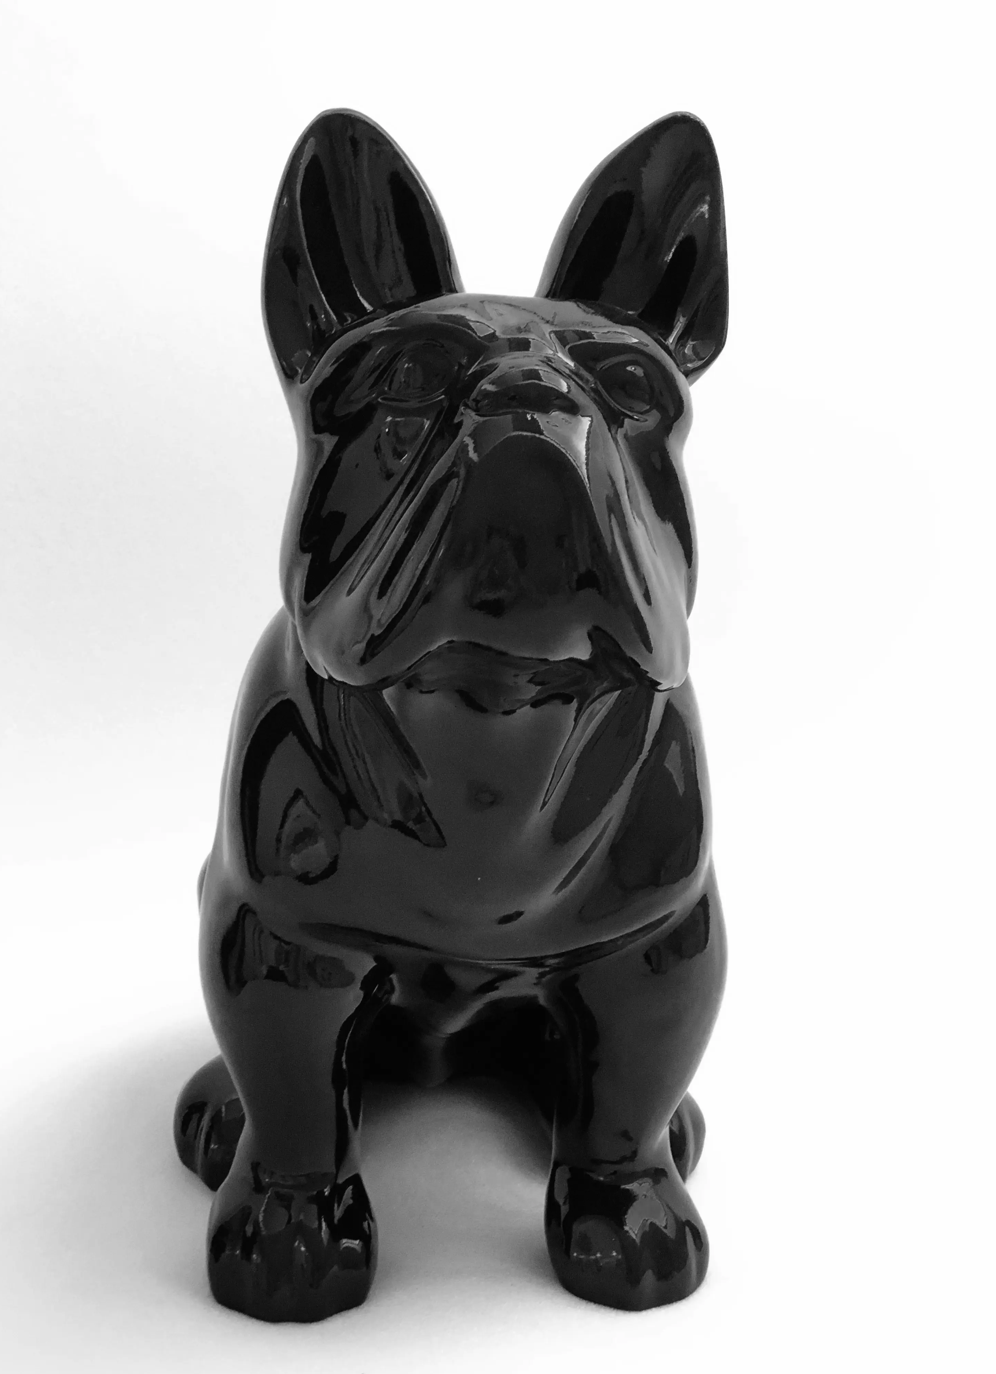  Französische Bulldogge Deko, Coole Bulldogge Figur